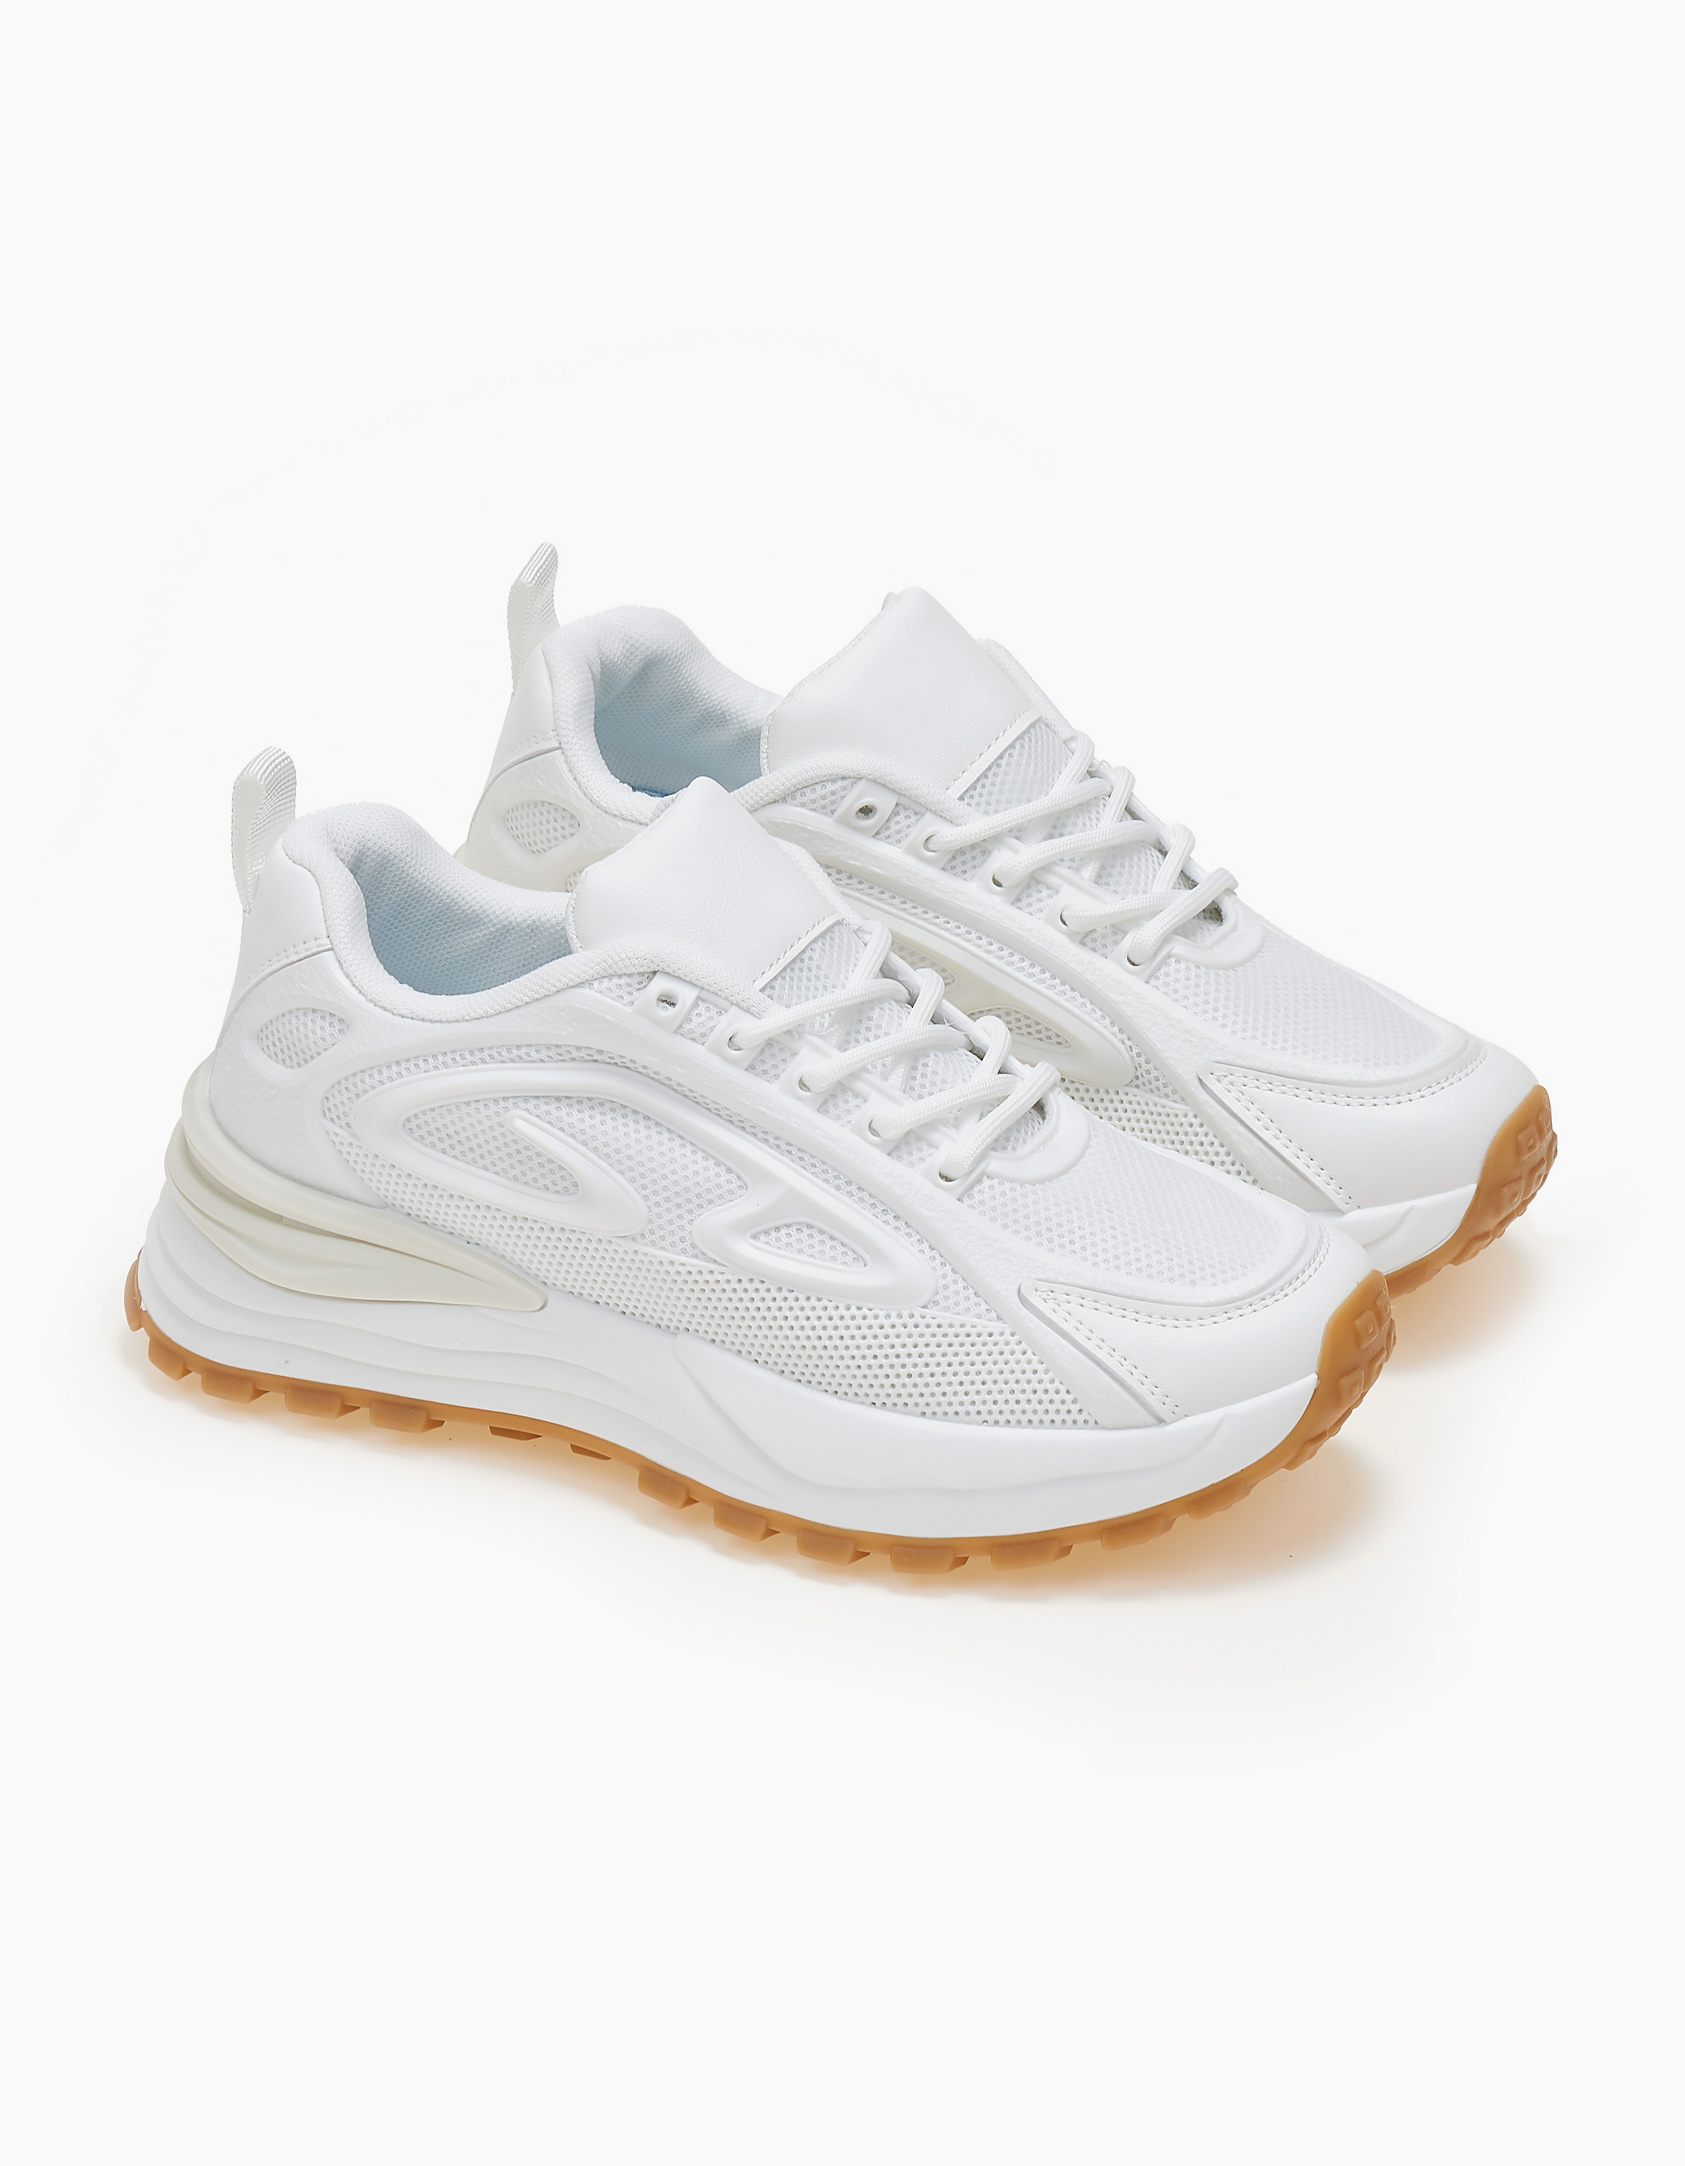 Παπούτσια > Sneakers Γυναικεία sneakers - Λευκό